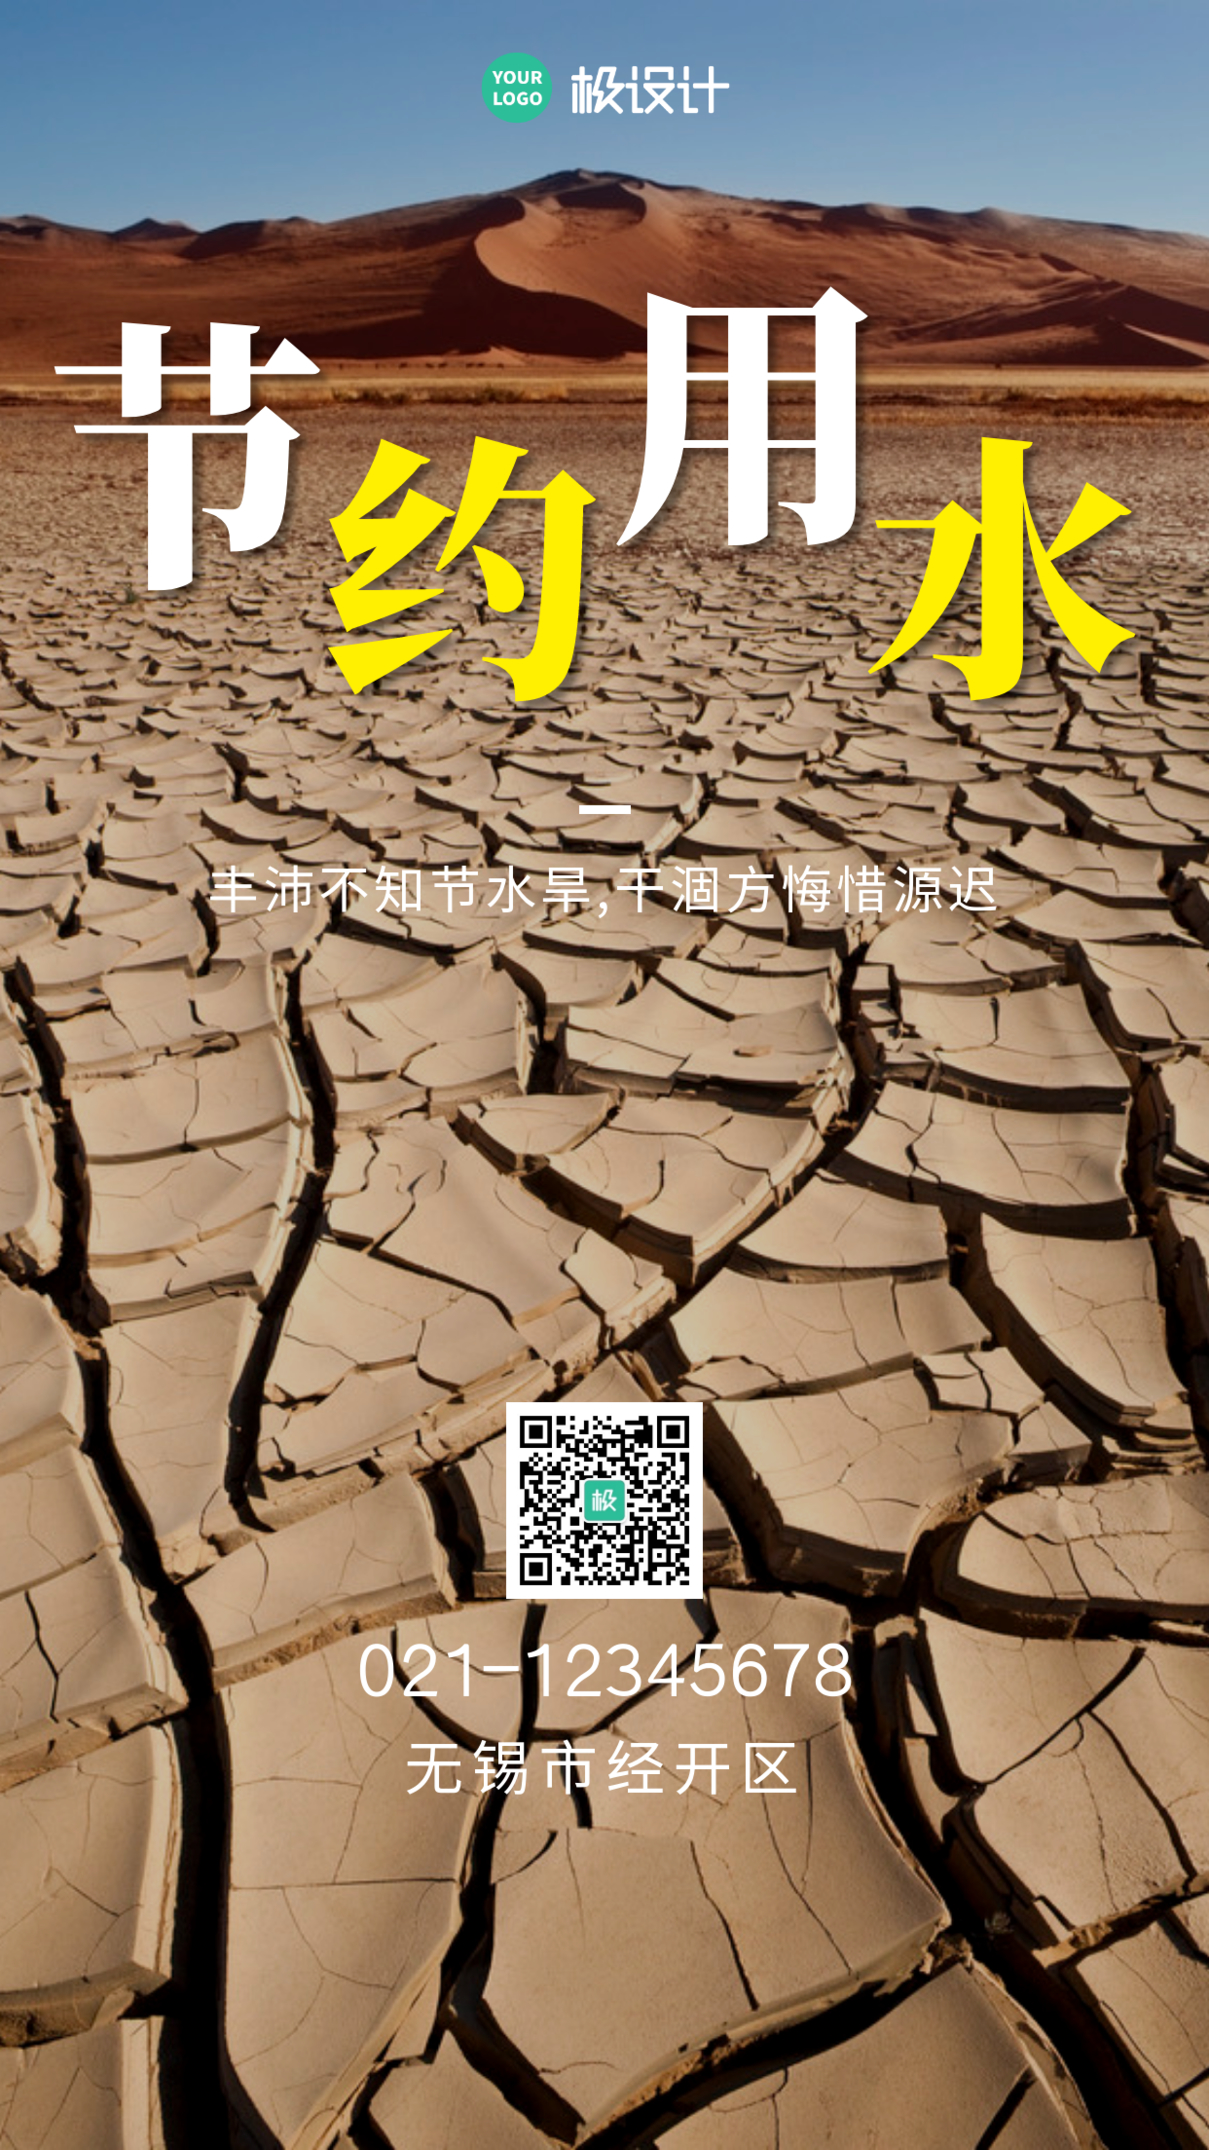 公益广告保护水资源干旱简约公益手机海报